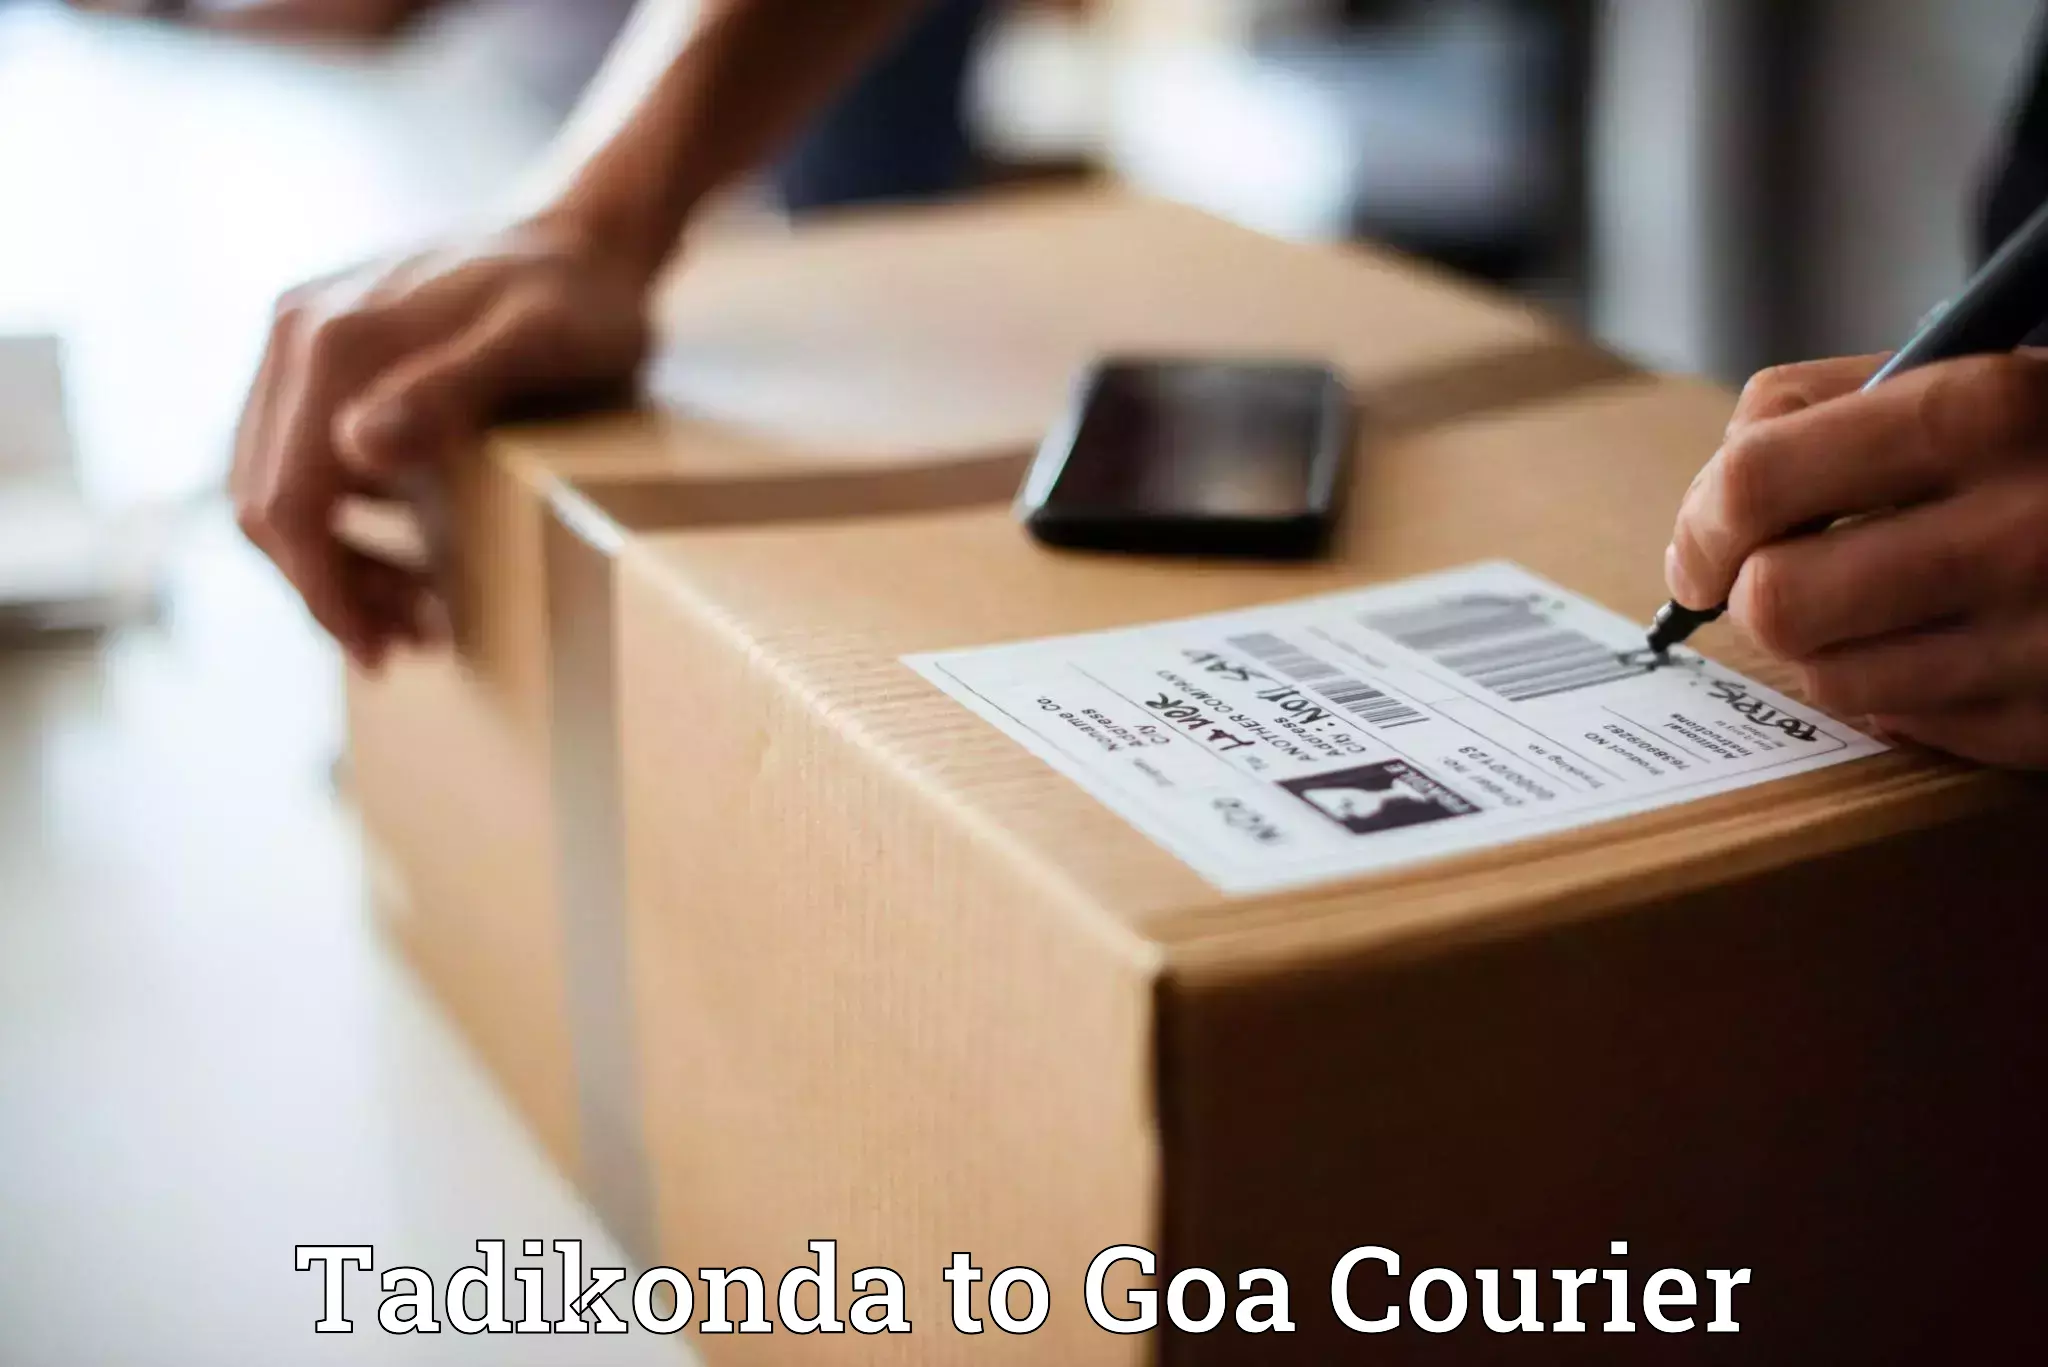 Efficient freight service Tadikonda to NIT Goa